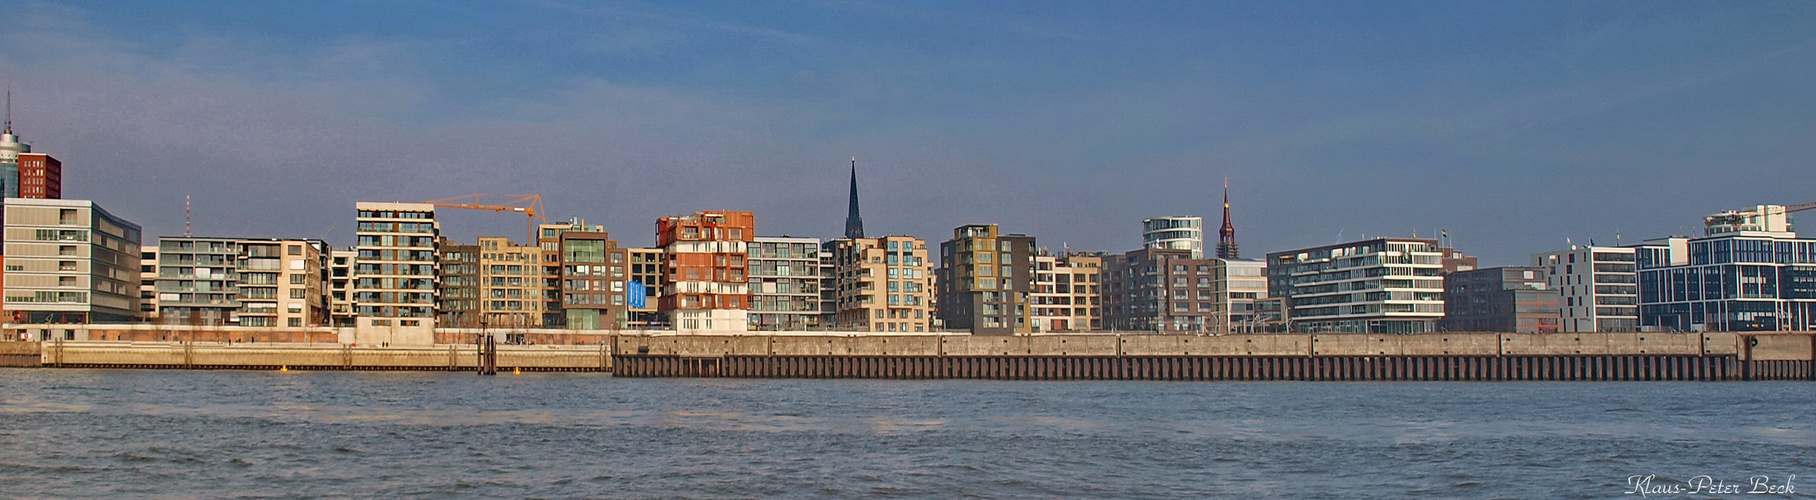 HafenCity Panorama